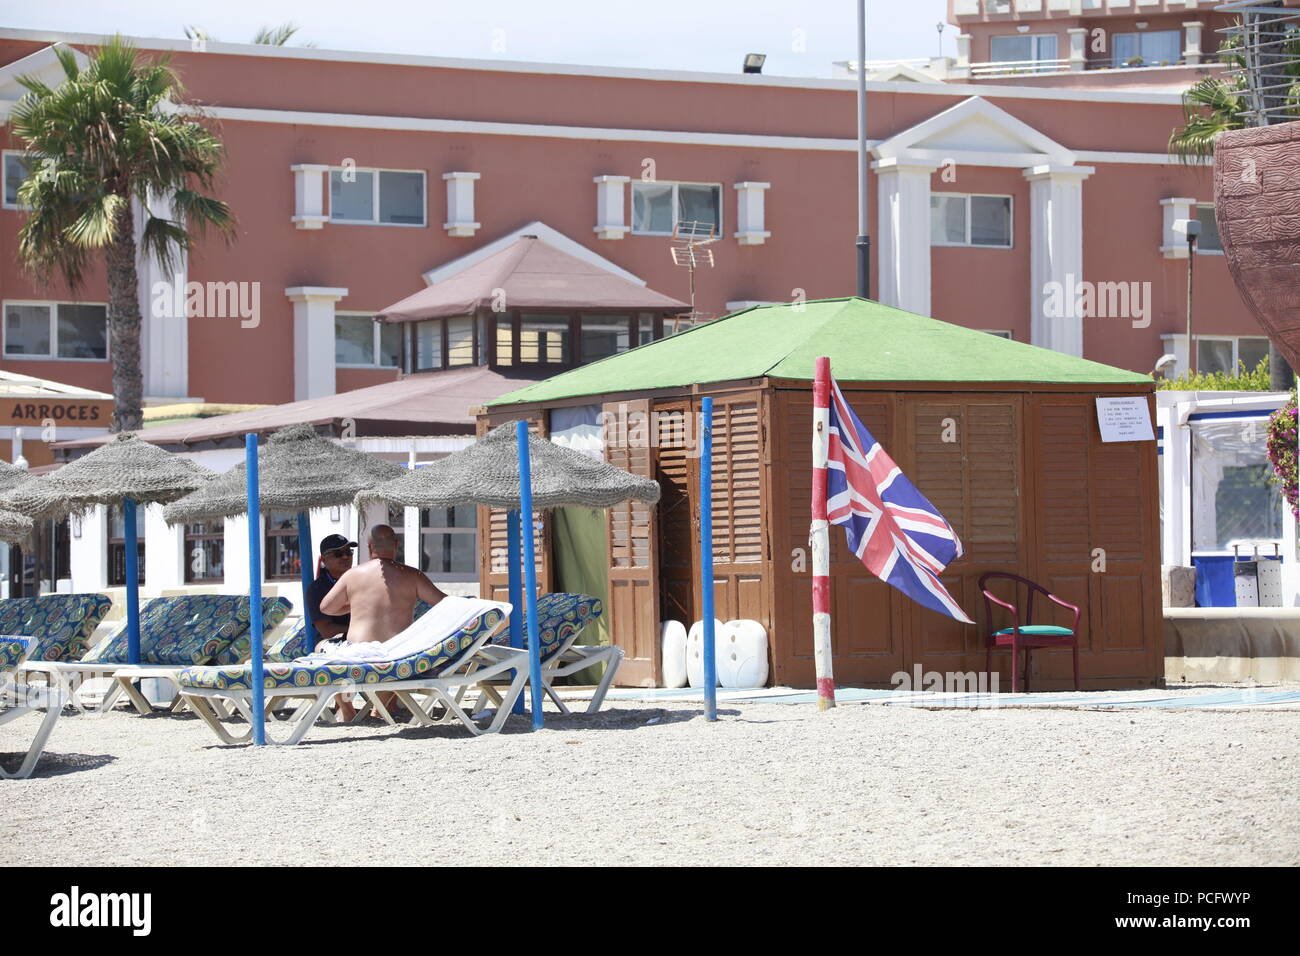 Brits abroad in almeria, spain Stock Photo